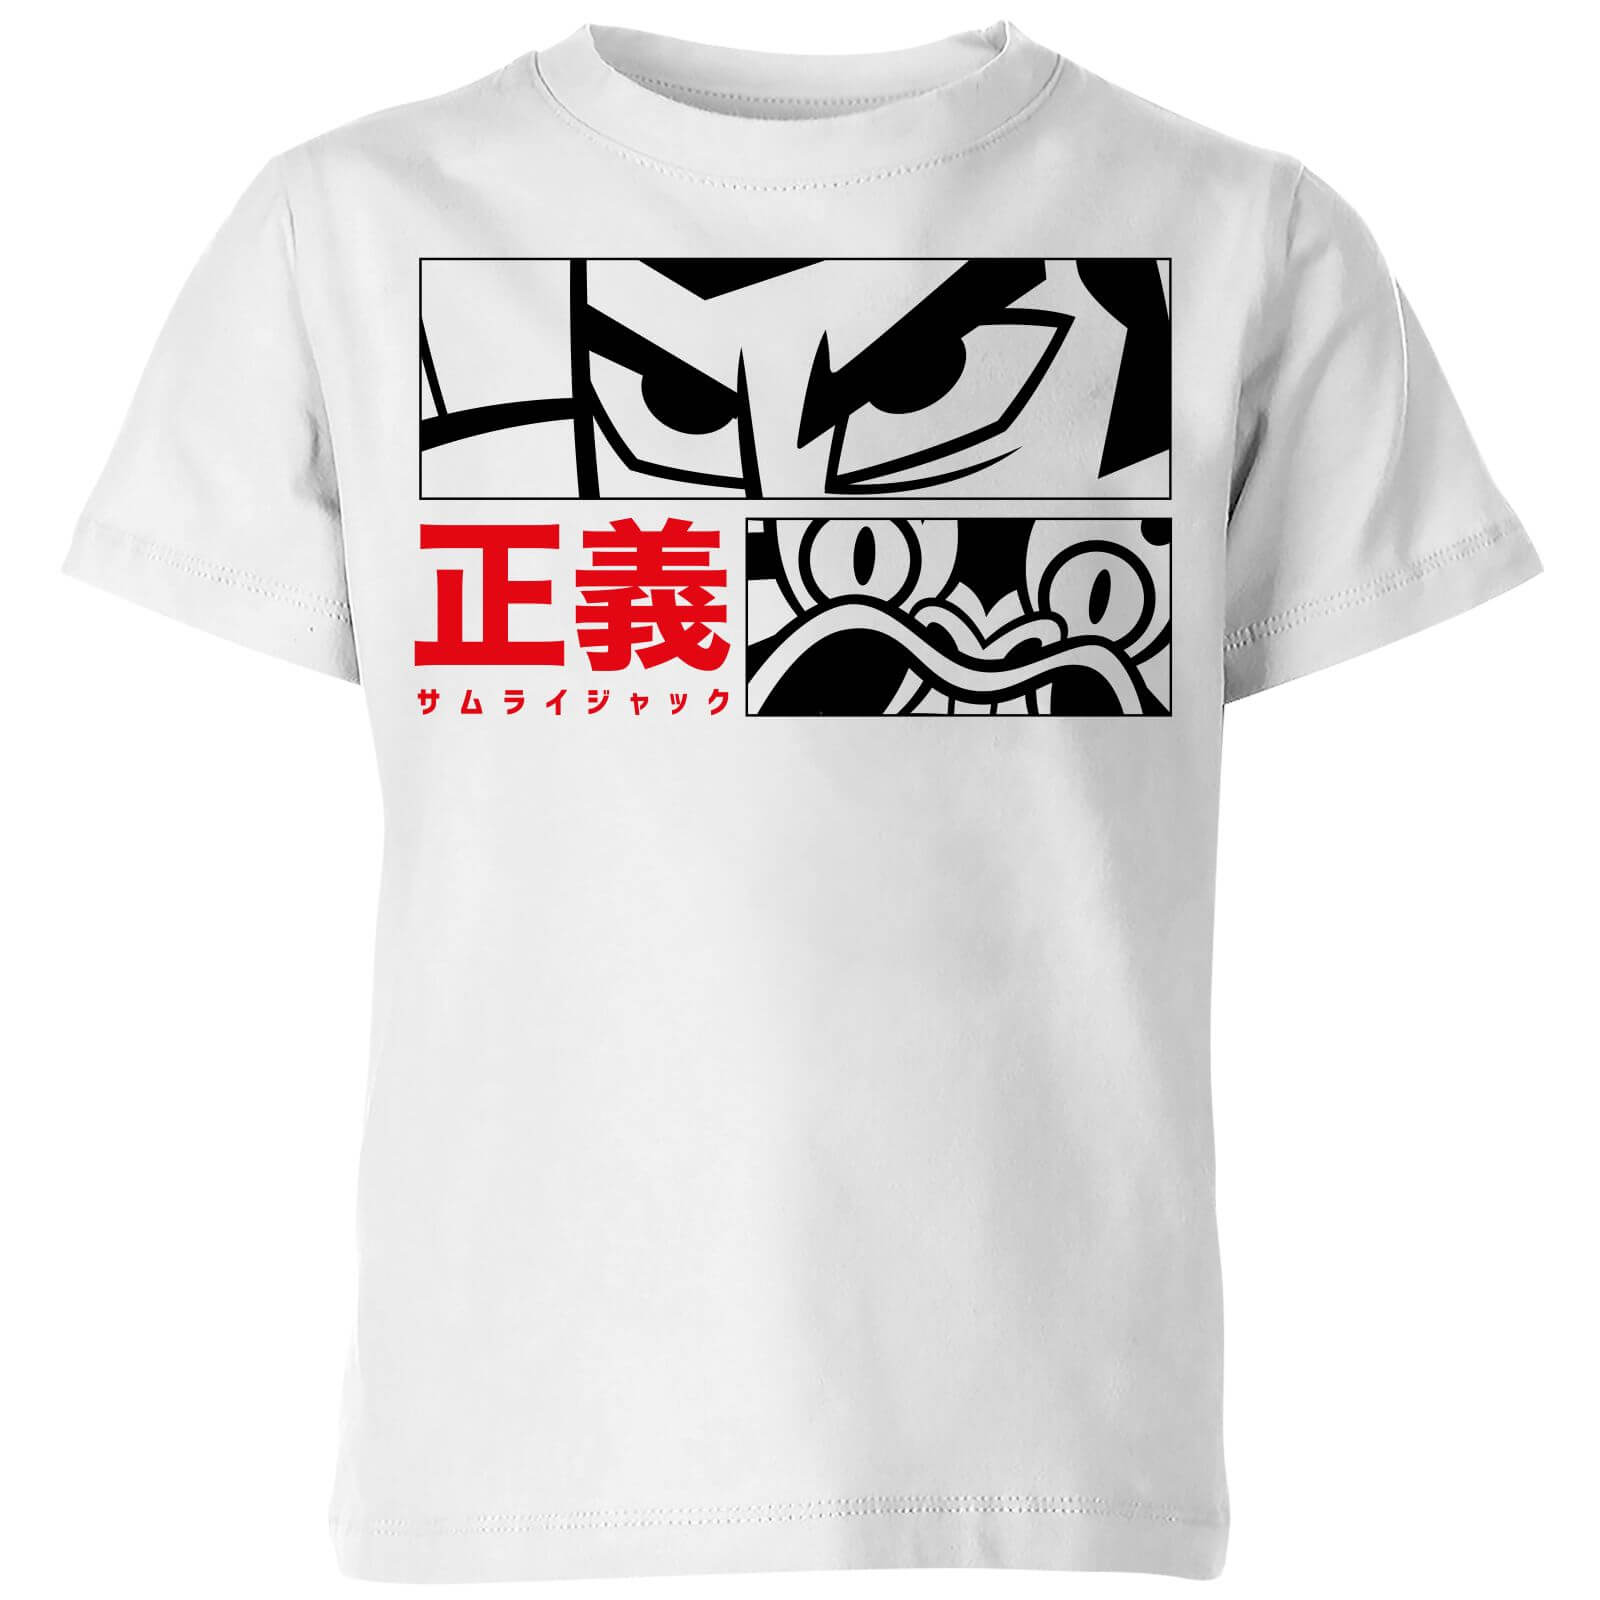 Cartoon Network Samurai Jack Arch Nemesis Kids' T-Shirt - White - 5-6 Years - White